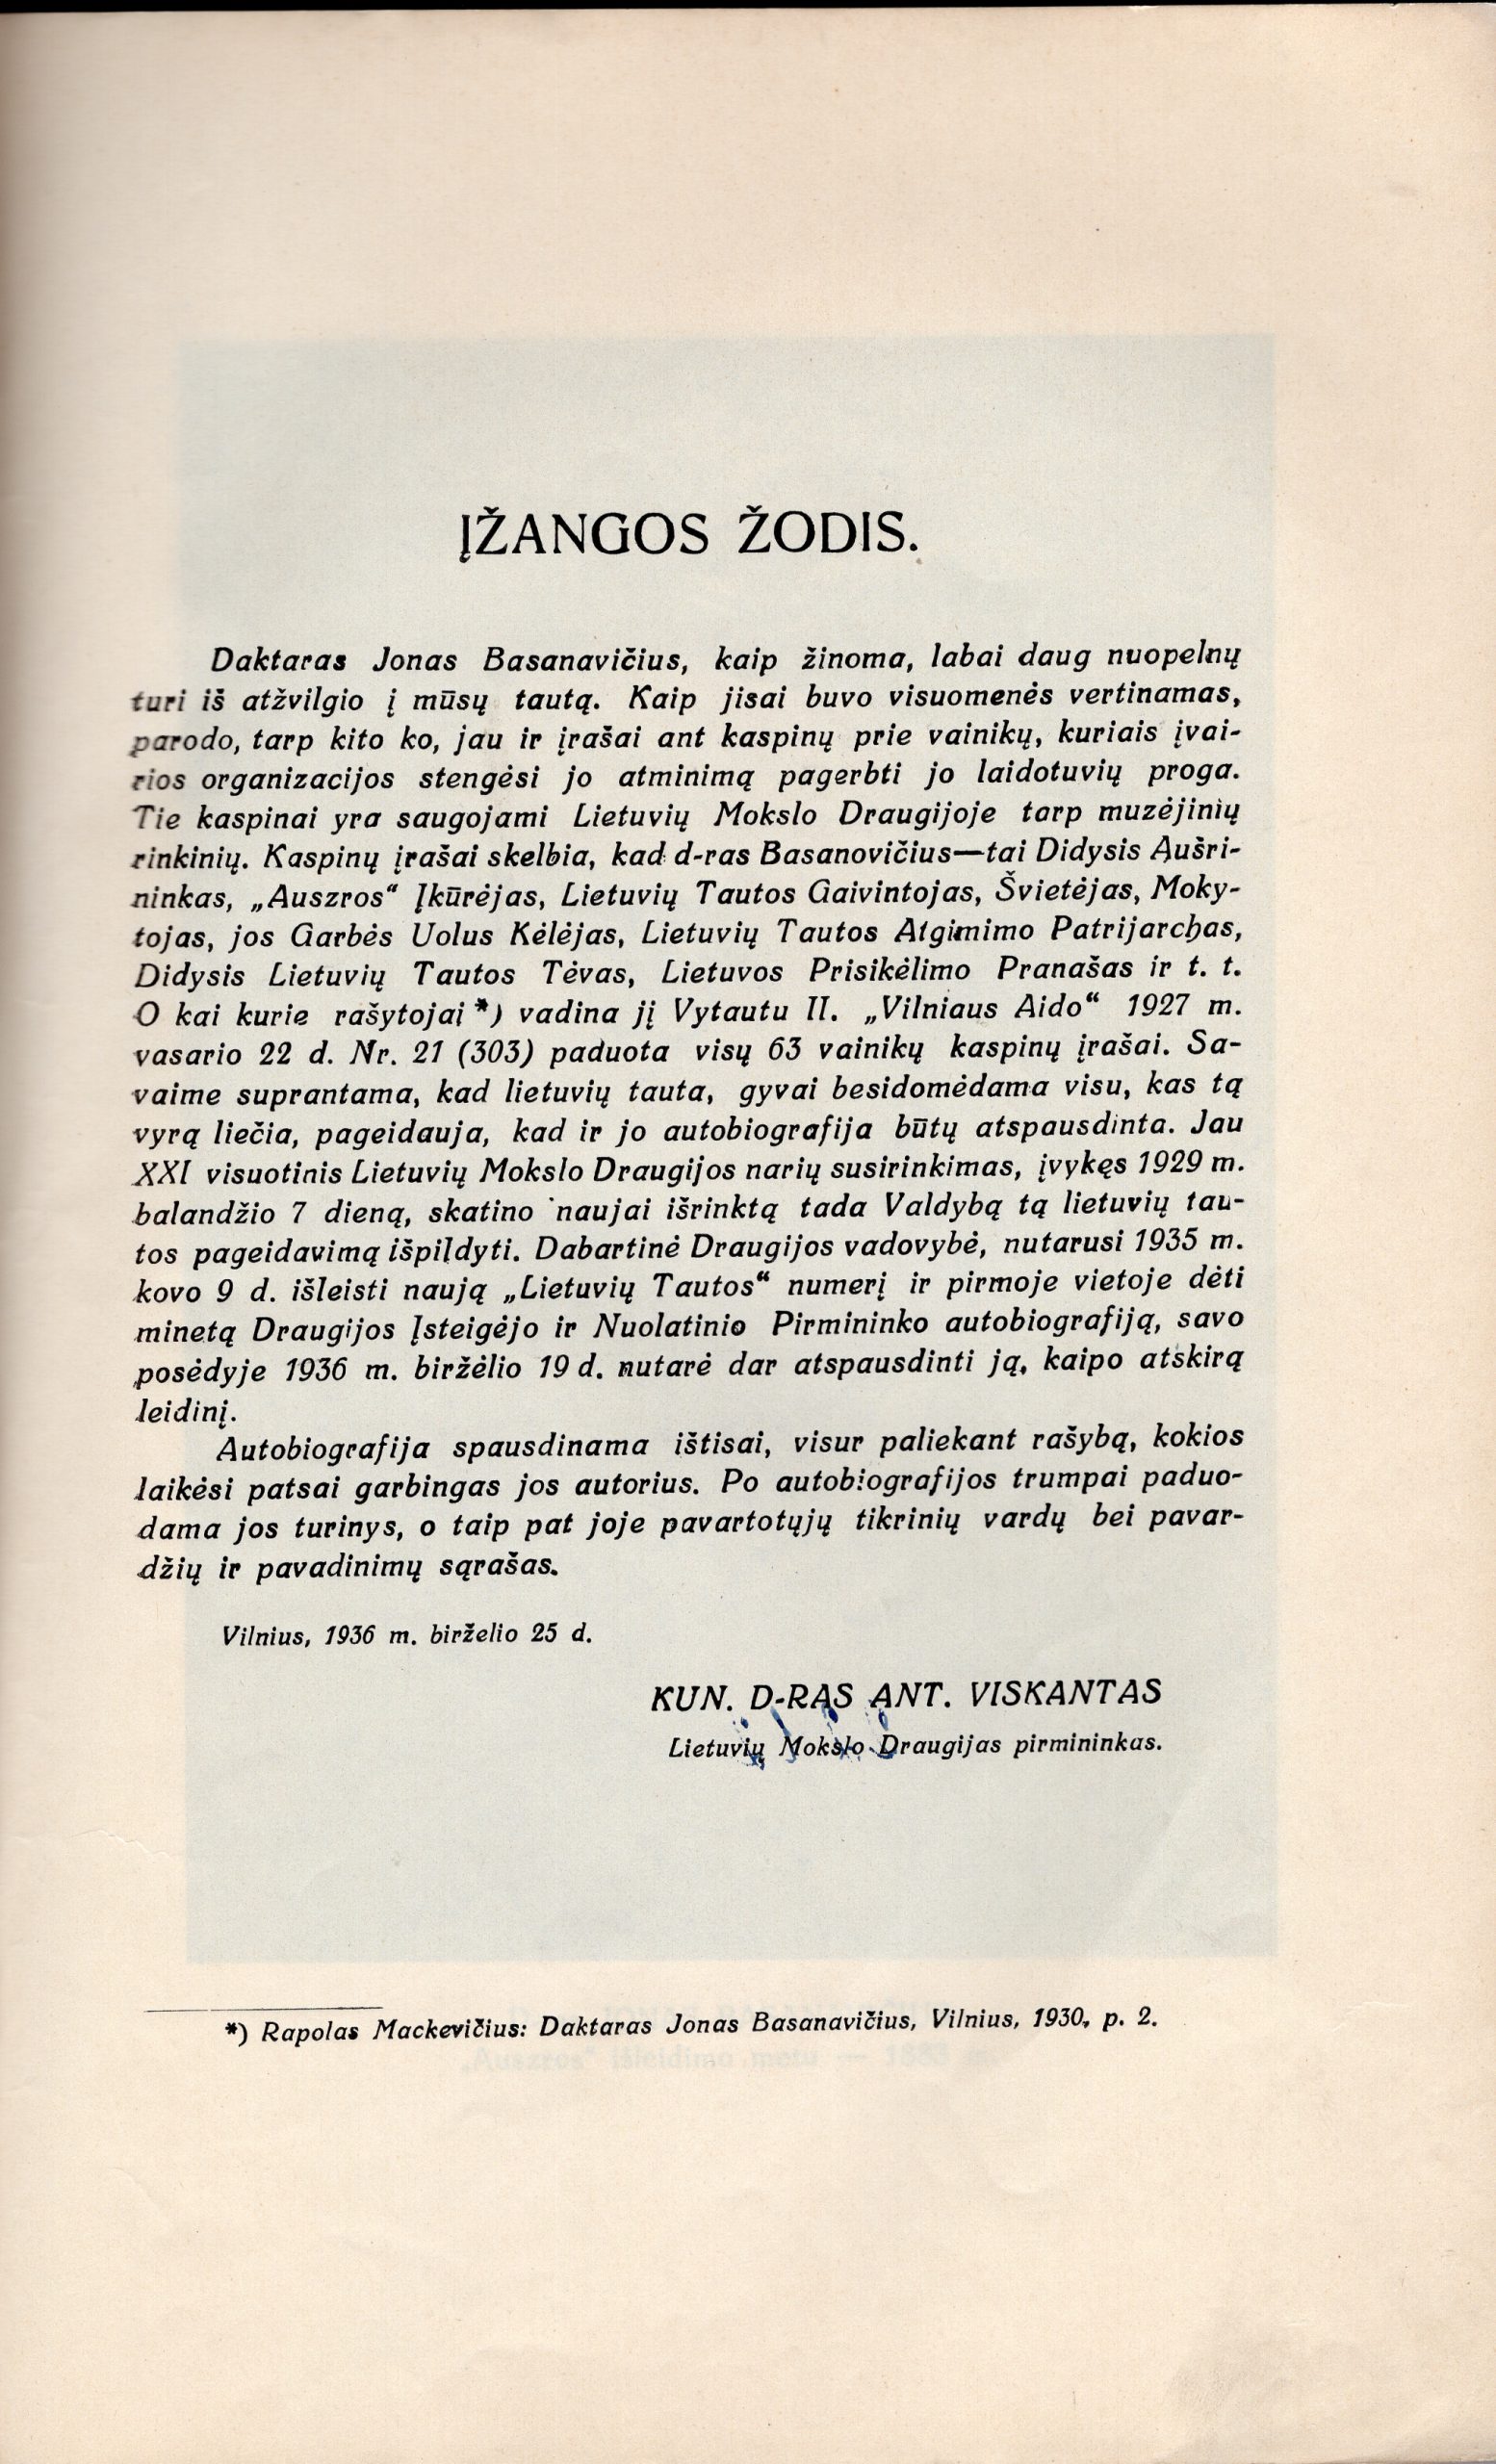 D-ro Jono Basanavičiaus autobiografija. Įžanga rašyta kun. D-ro Antano Viskantos. Vilnius, 1936 m.